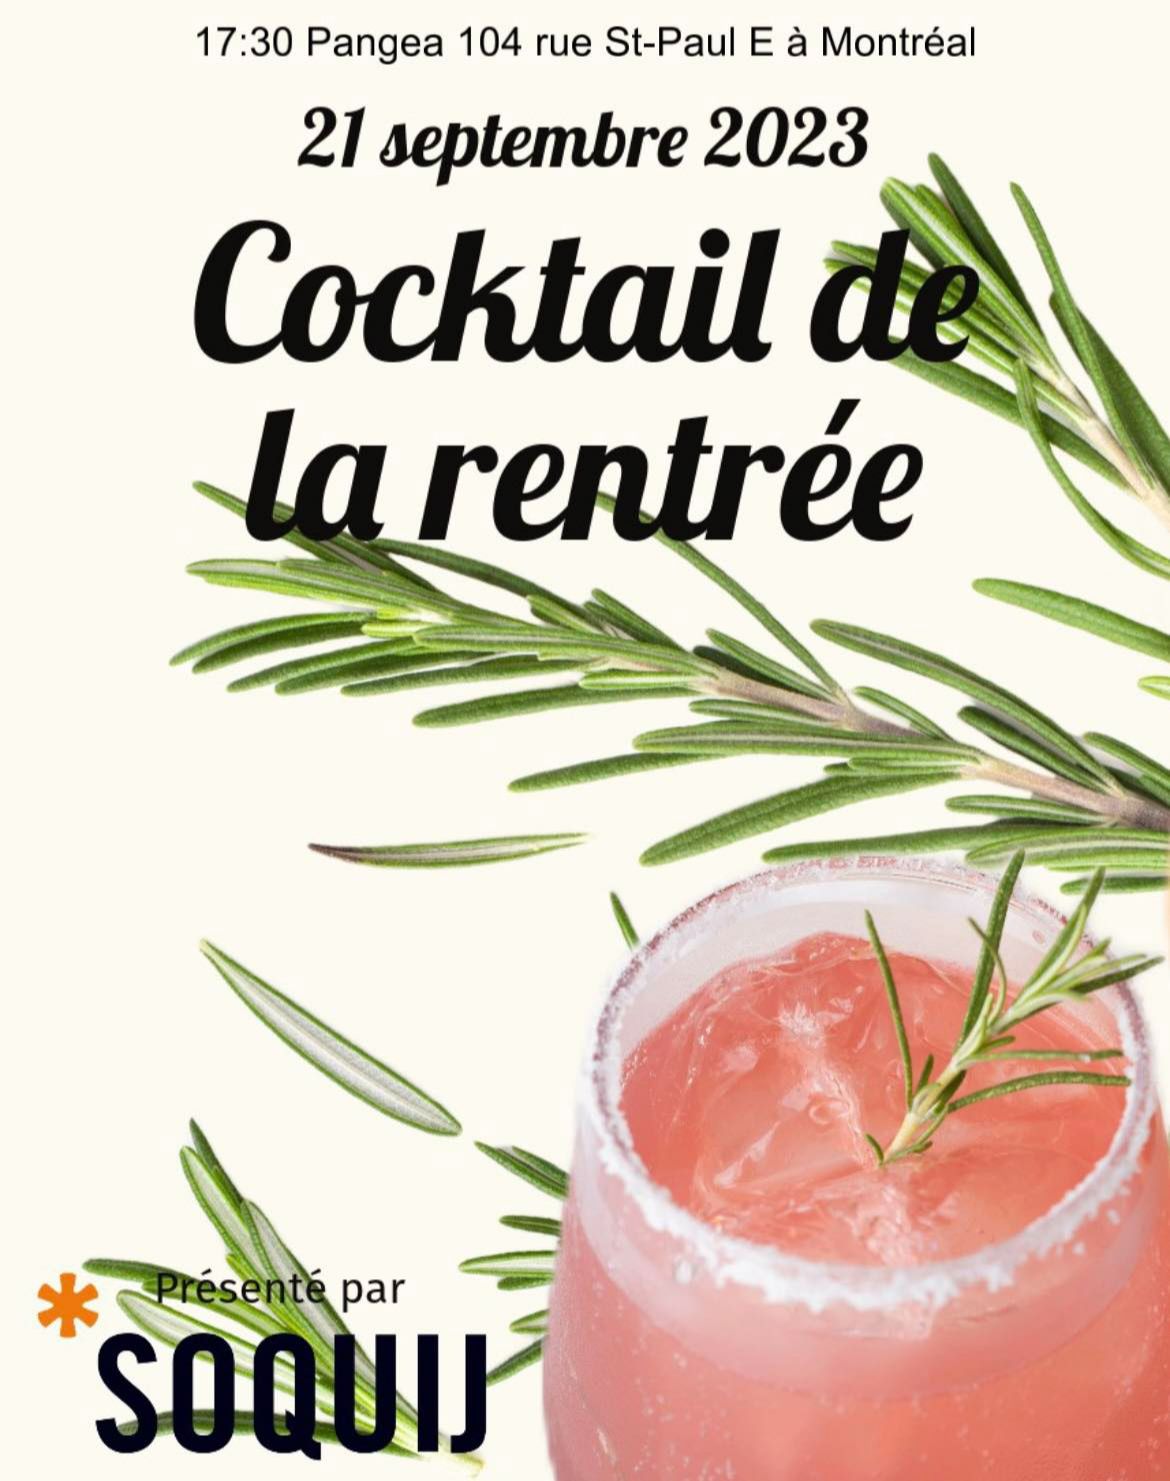 Cocktail de la rentrée - Montréal